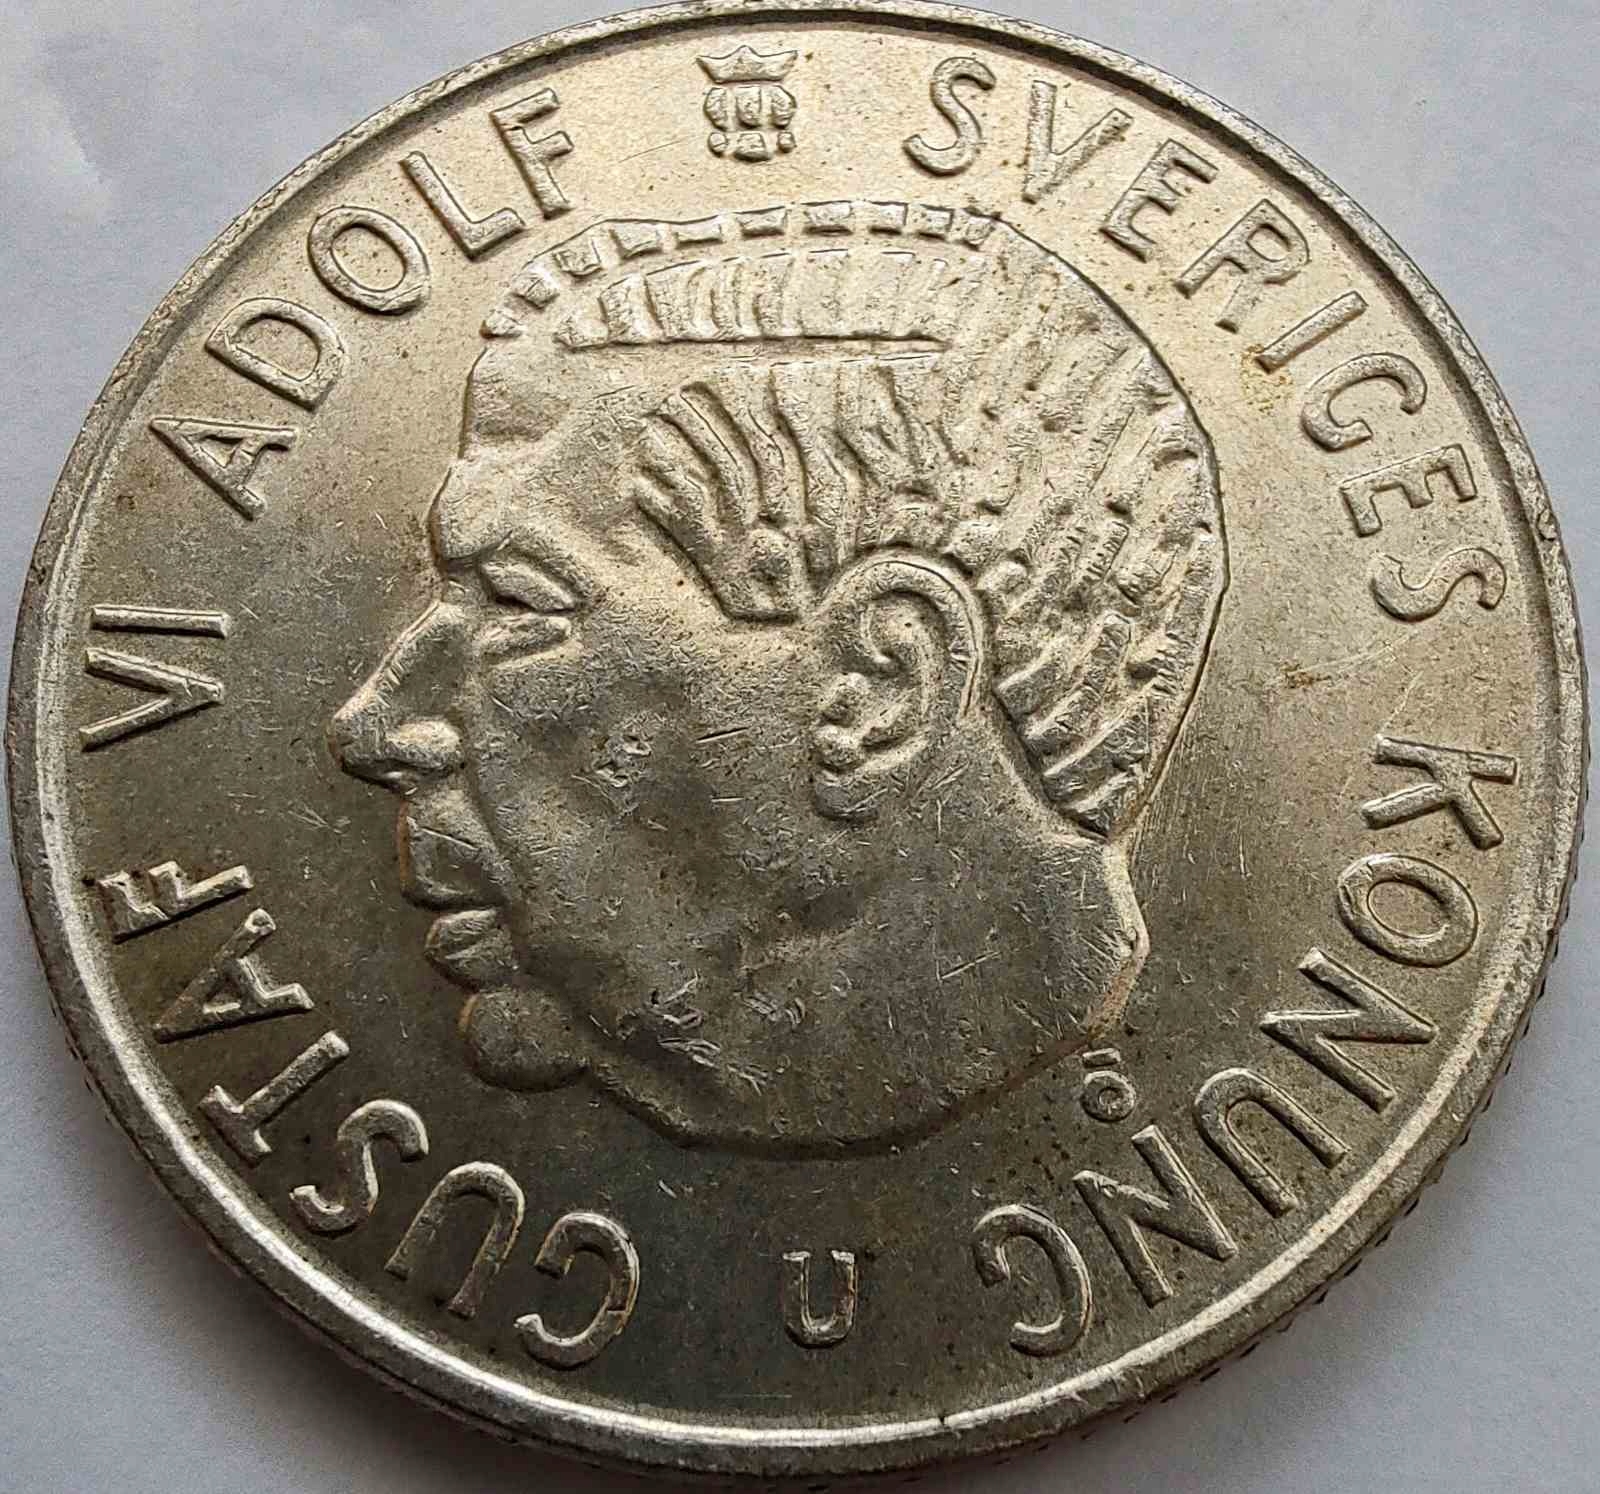 2143 - Szwecja 2 korony, 1965 ag